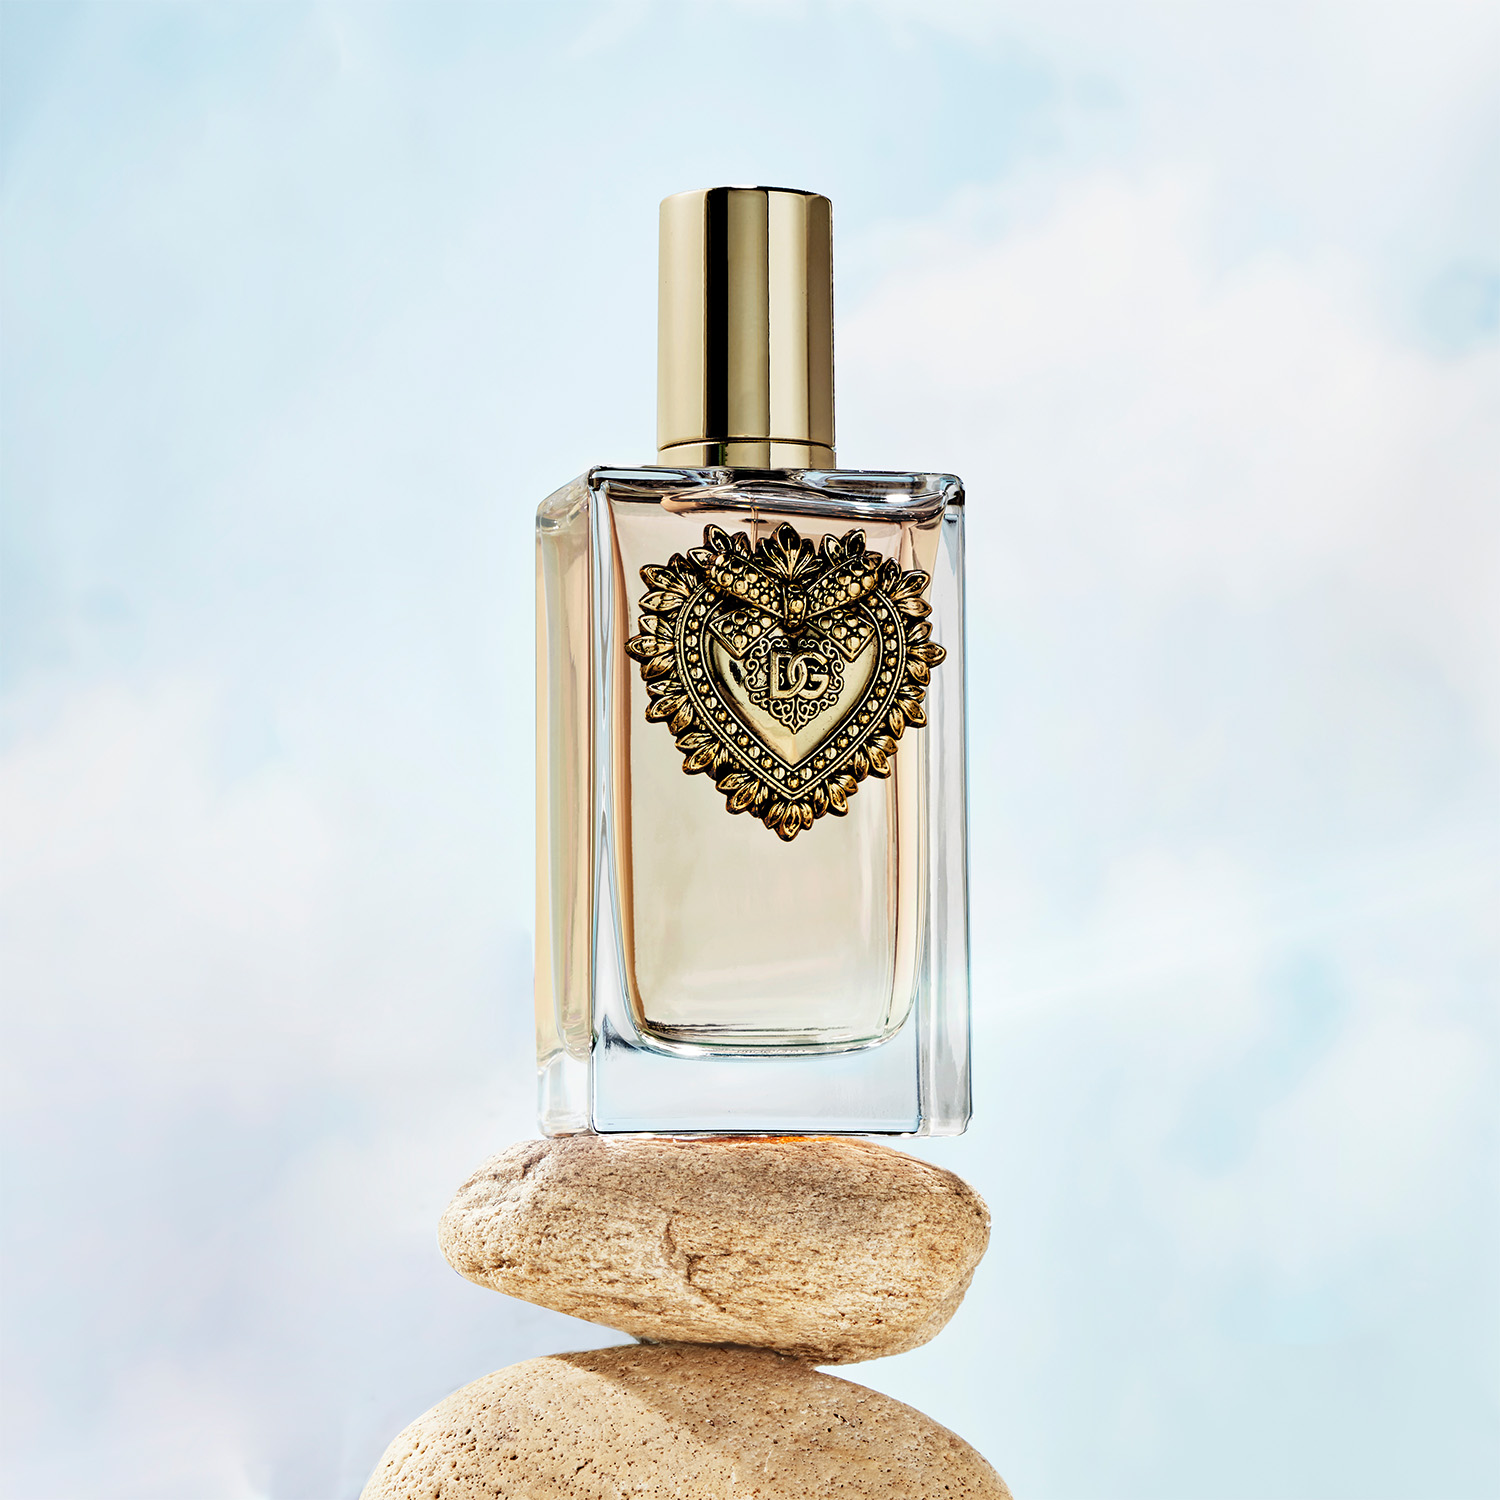 Dolce & Gabbana Devotion Eau de Parfum, Perfume for Women, 1.7 oz - image 5 of 5